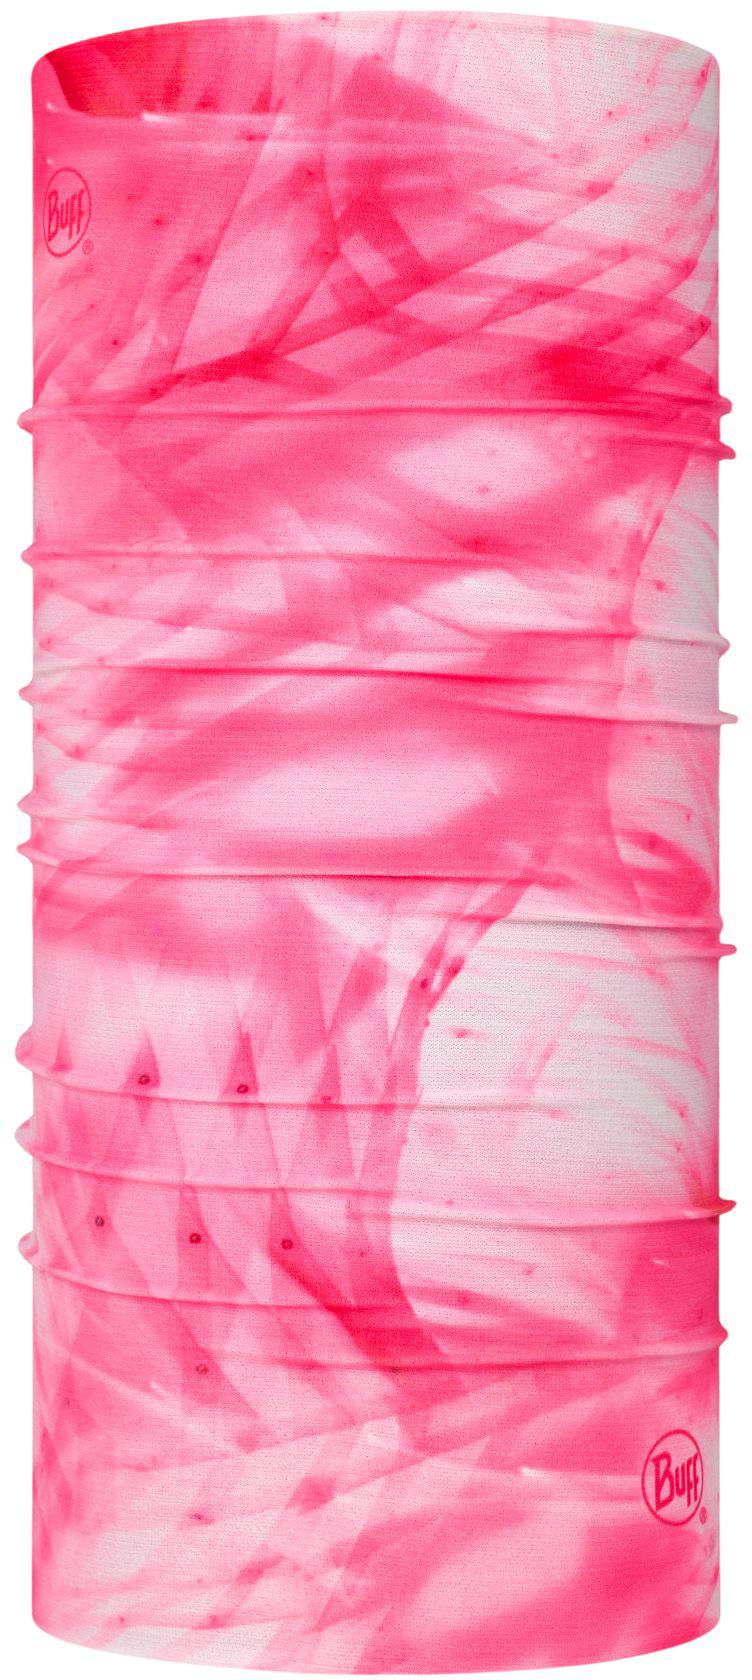 Buff Coolnet UV+ Jr Treya Pink Fluor